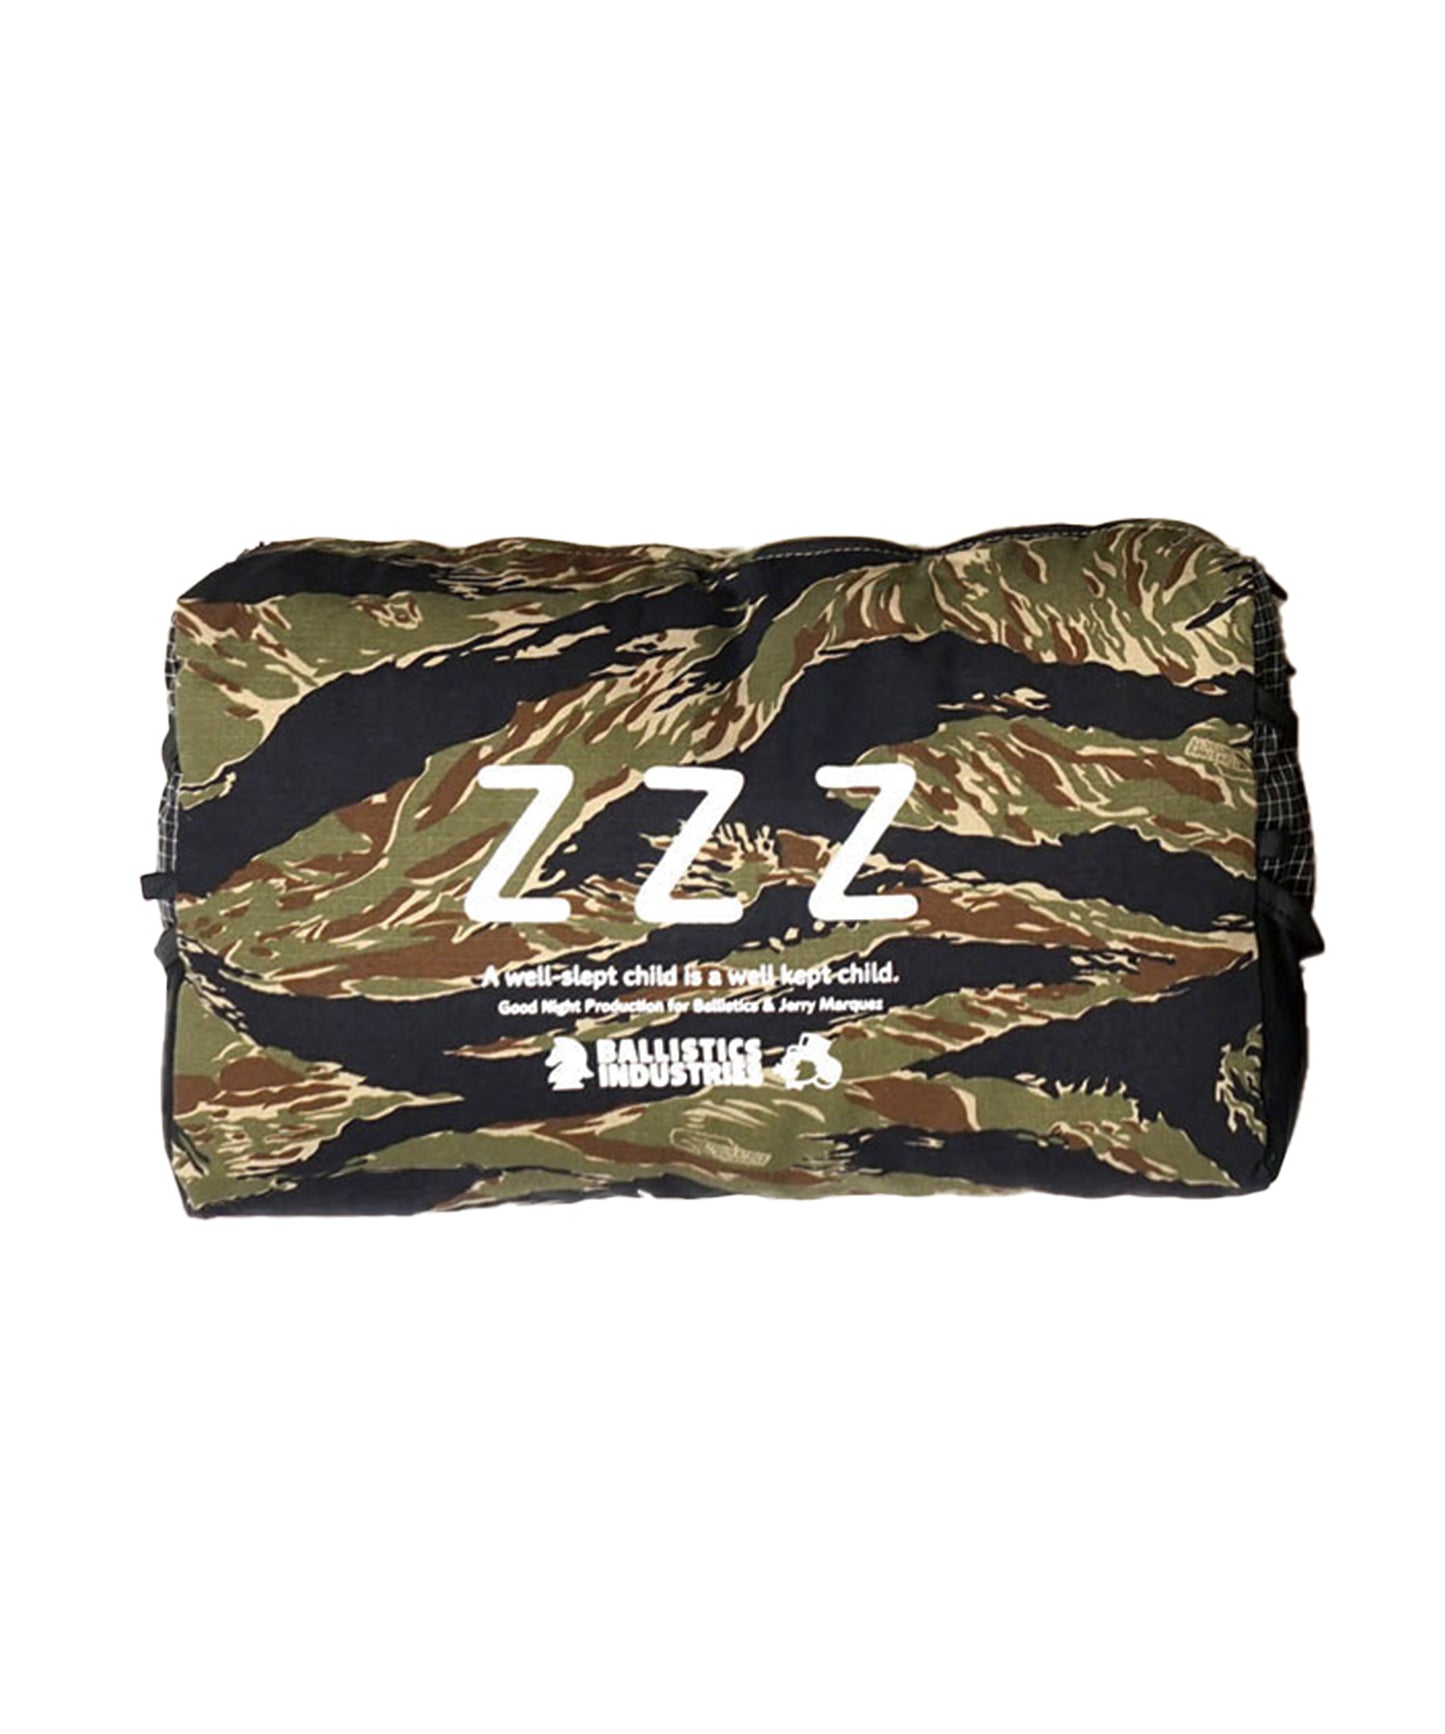 Ballistics Z Z Z JM Pillow & Case 露營枕頭